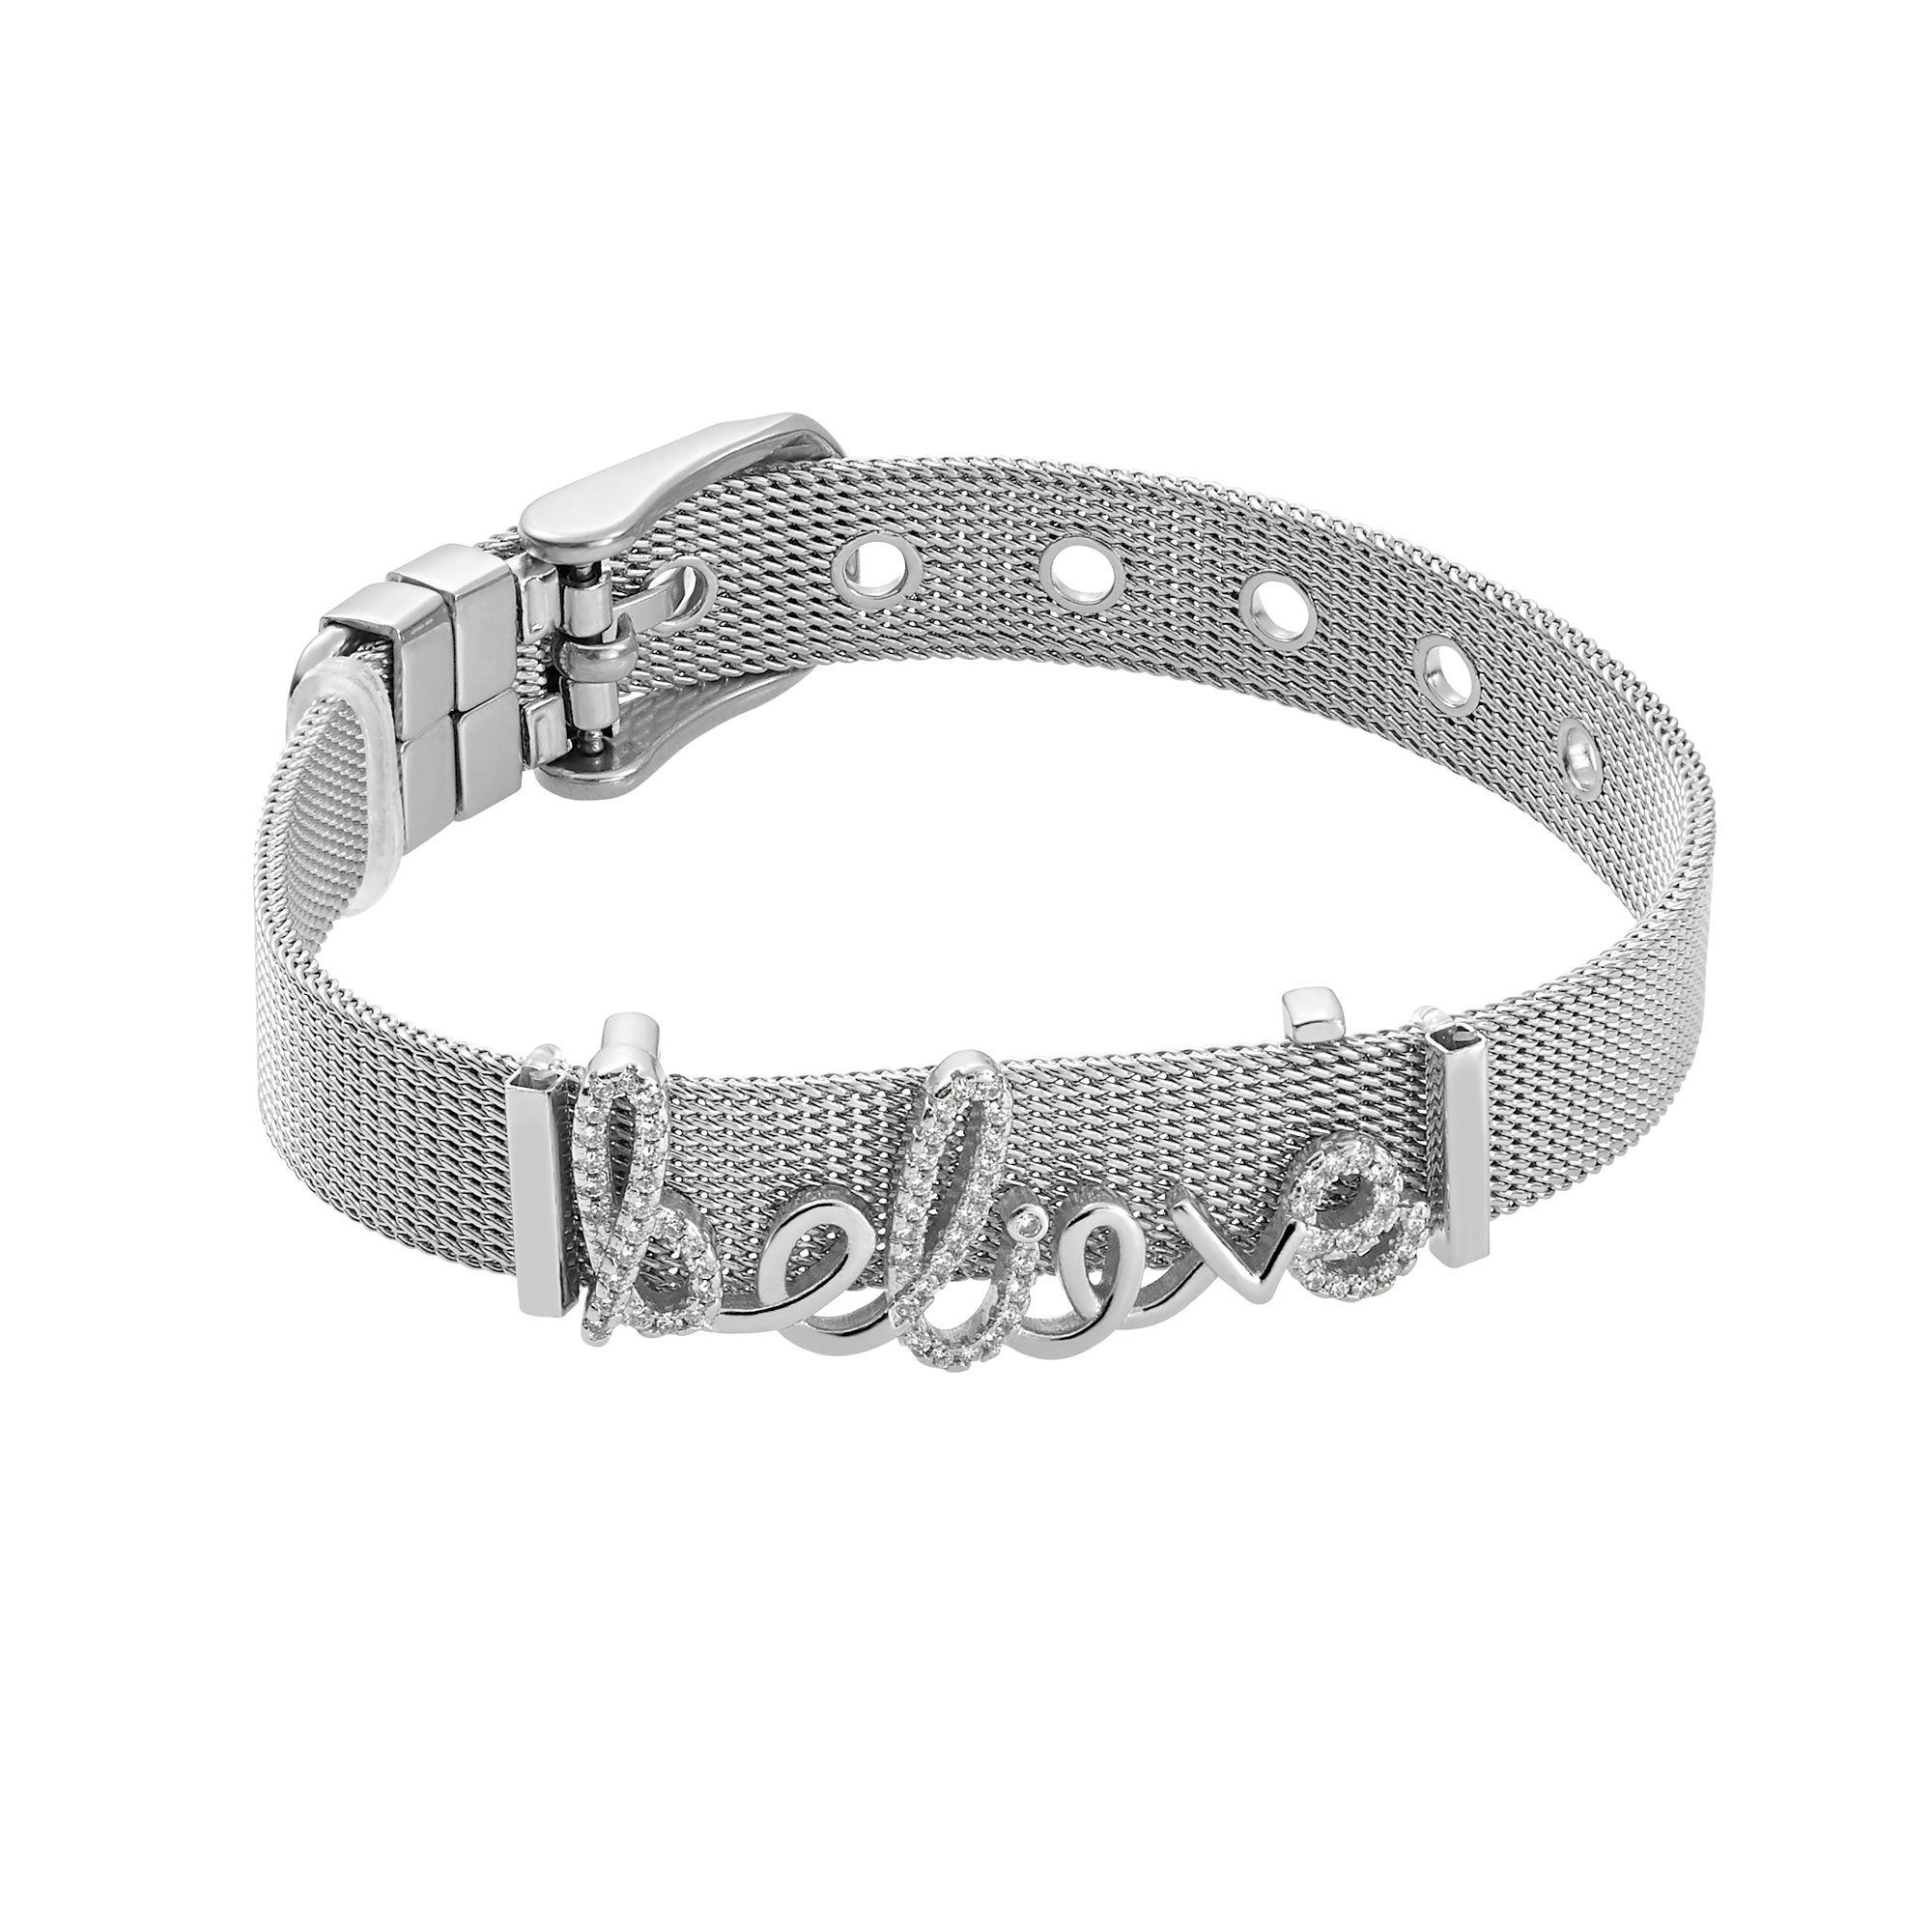 Damen Schmuck Heideman Armband Mesh Armband Believe poliert (keine Angabe, inkl. Geschenkverpackung), Charms sind austauschbar